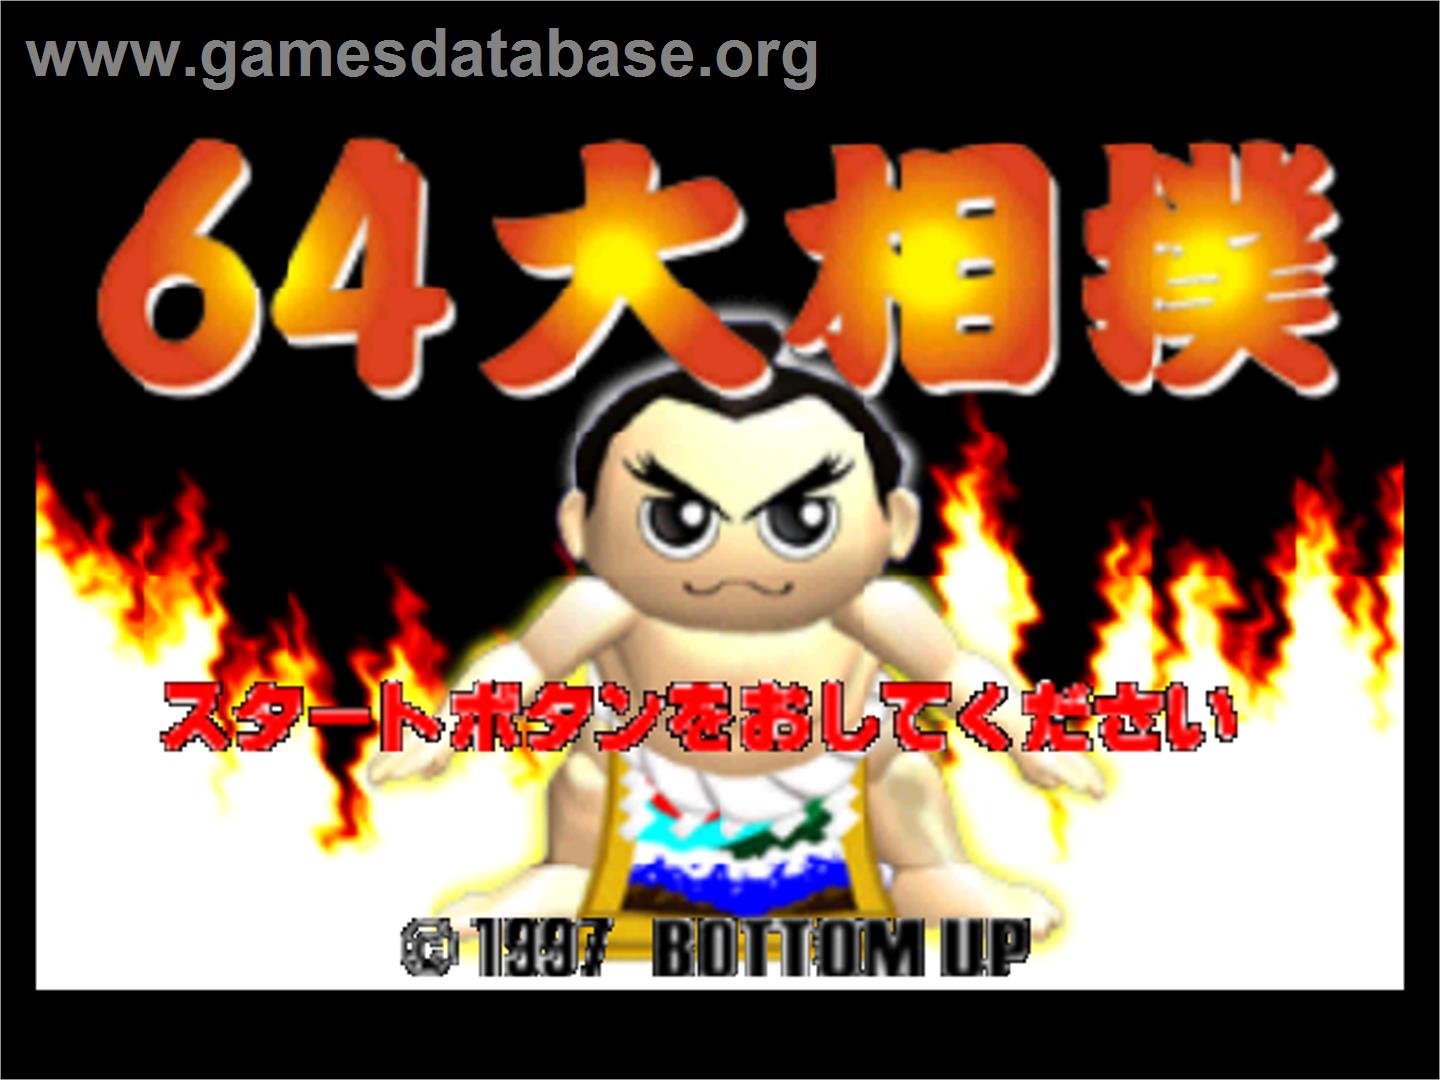 64 Oozumou - Nintendo N64 - Artwork - Title Screen